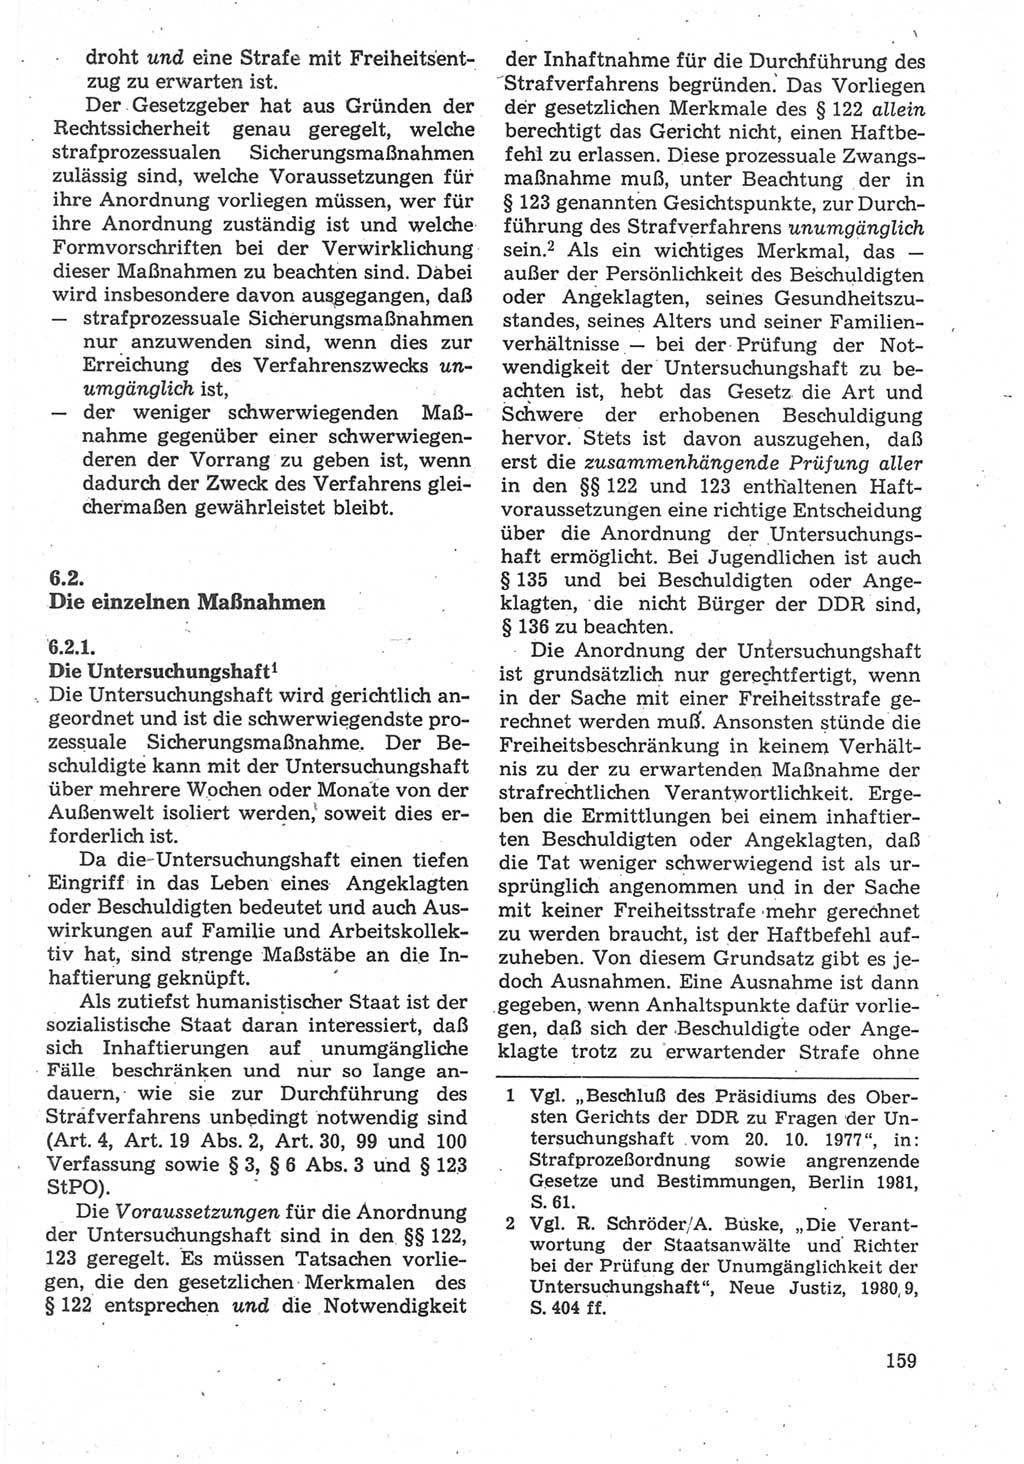 Strafverfahrensrecht [Deutsche Demokratische Republik (DDR)], Lehrbuch 1987, Seite 159 (Strafverf.-R. DDR Lb. 1987, S. 159)